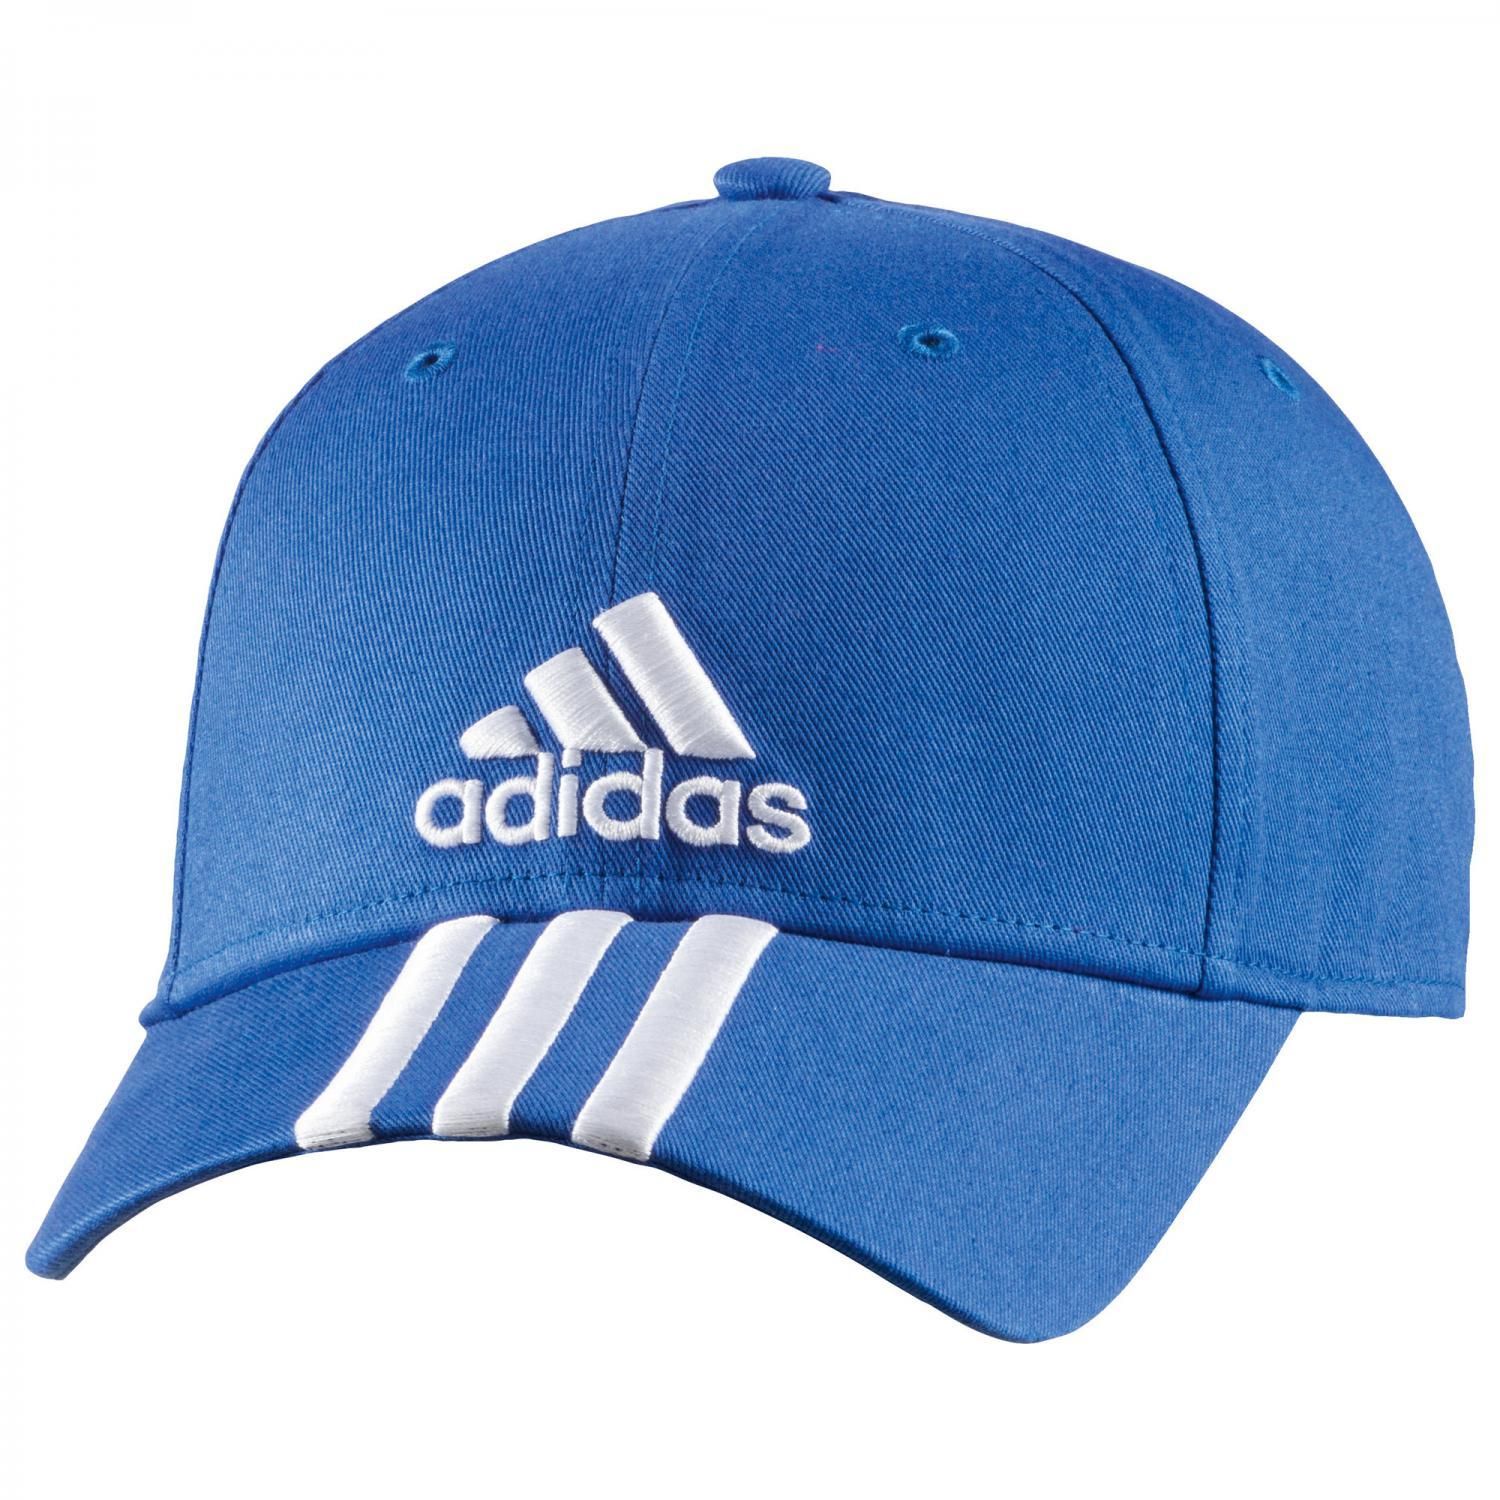  Adidas - Nón thể thao    PERF CAP 3S CO AB0536 (Xanh) 